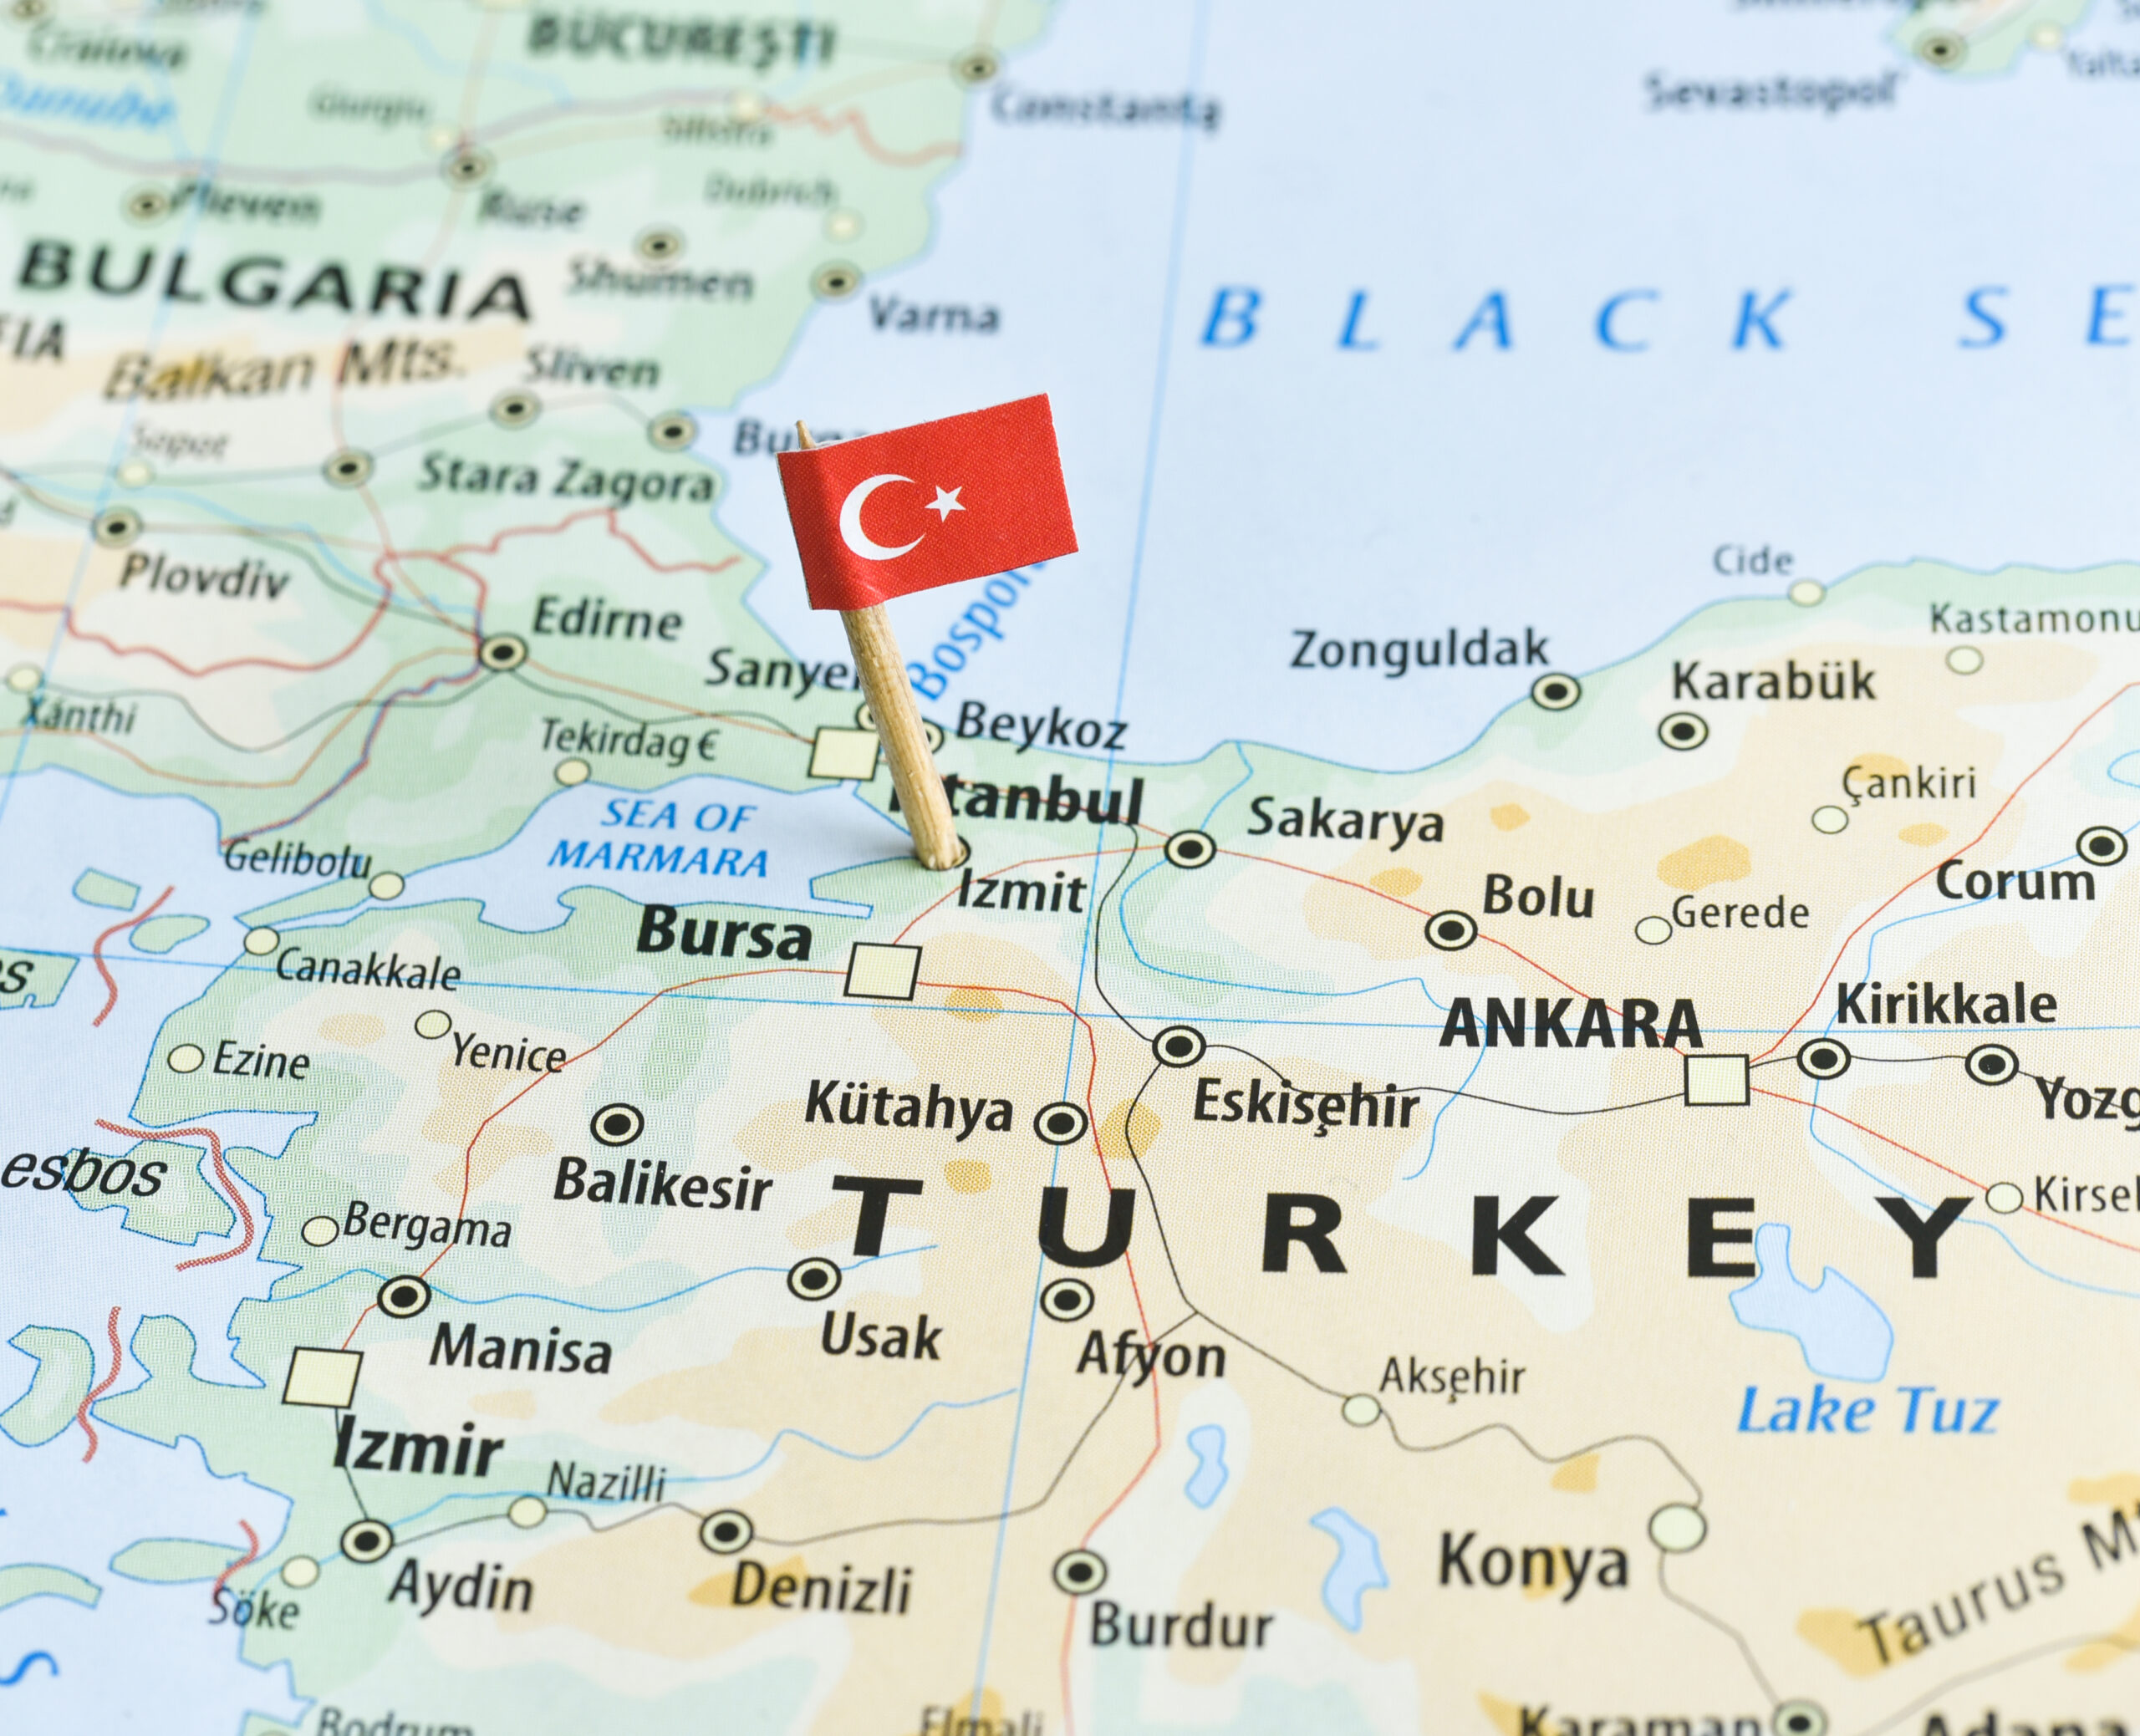 Poziția strategică pe care o ocupă Turcia astăzi, o poziție unică în lume (sursă foto: dreamstime)